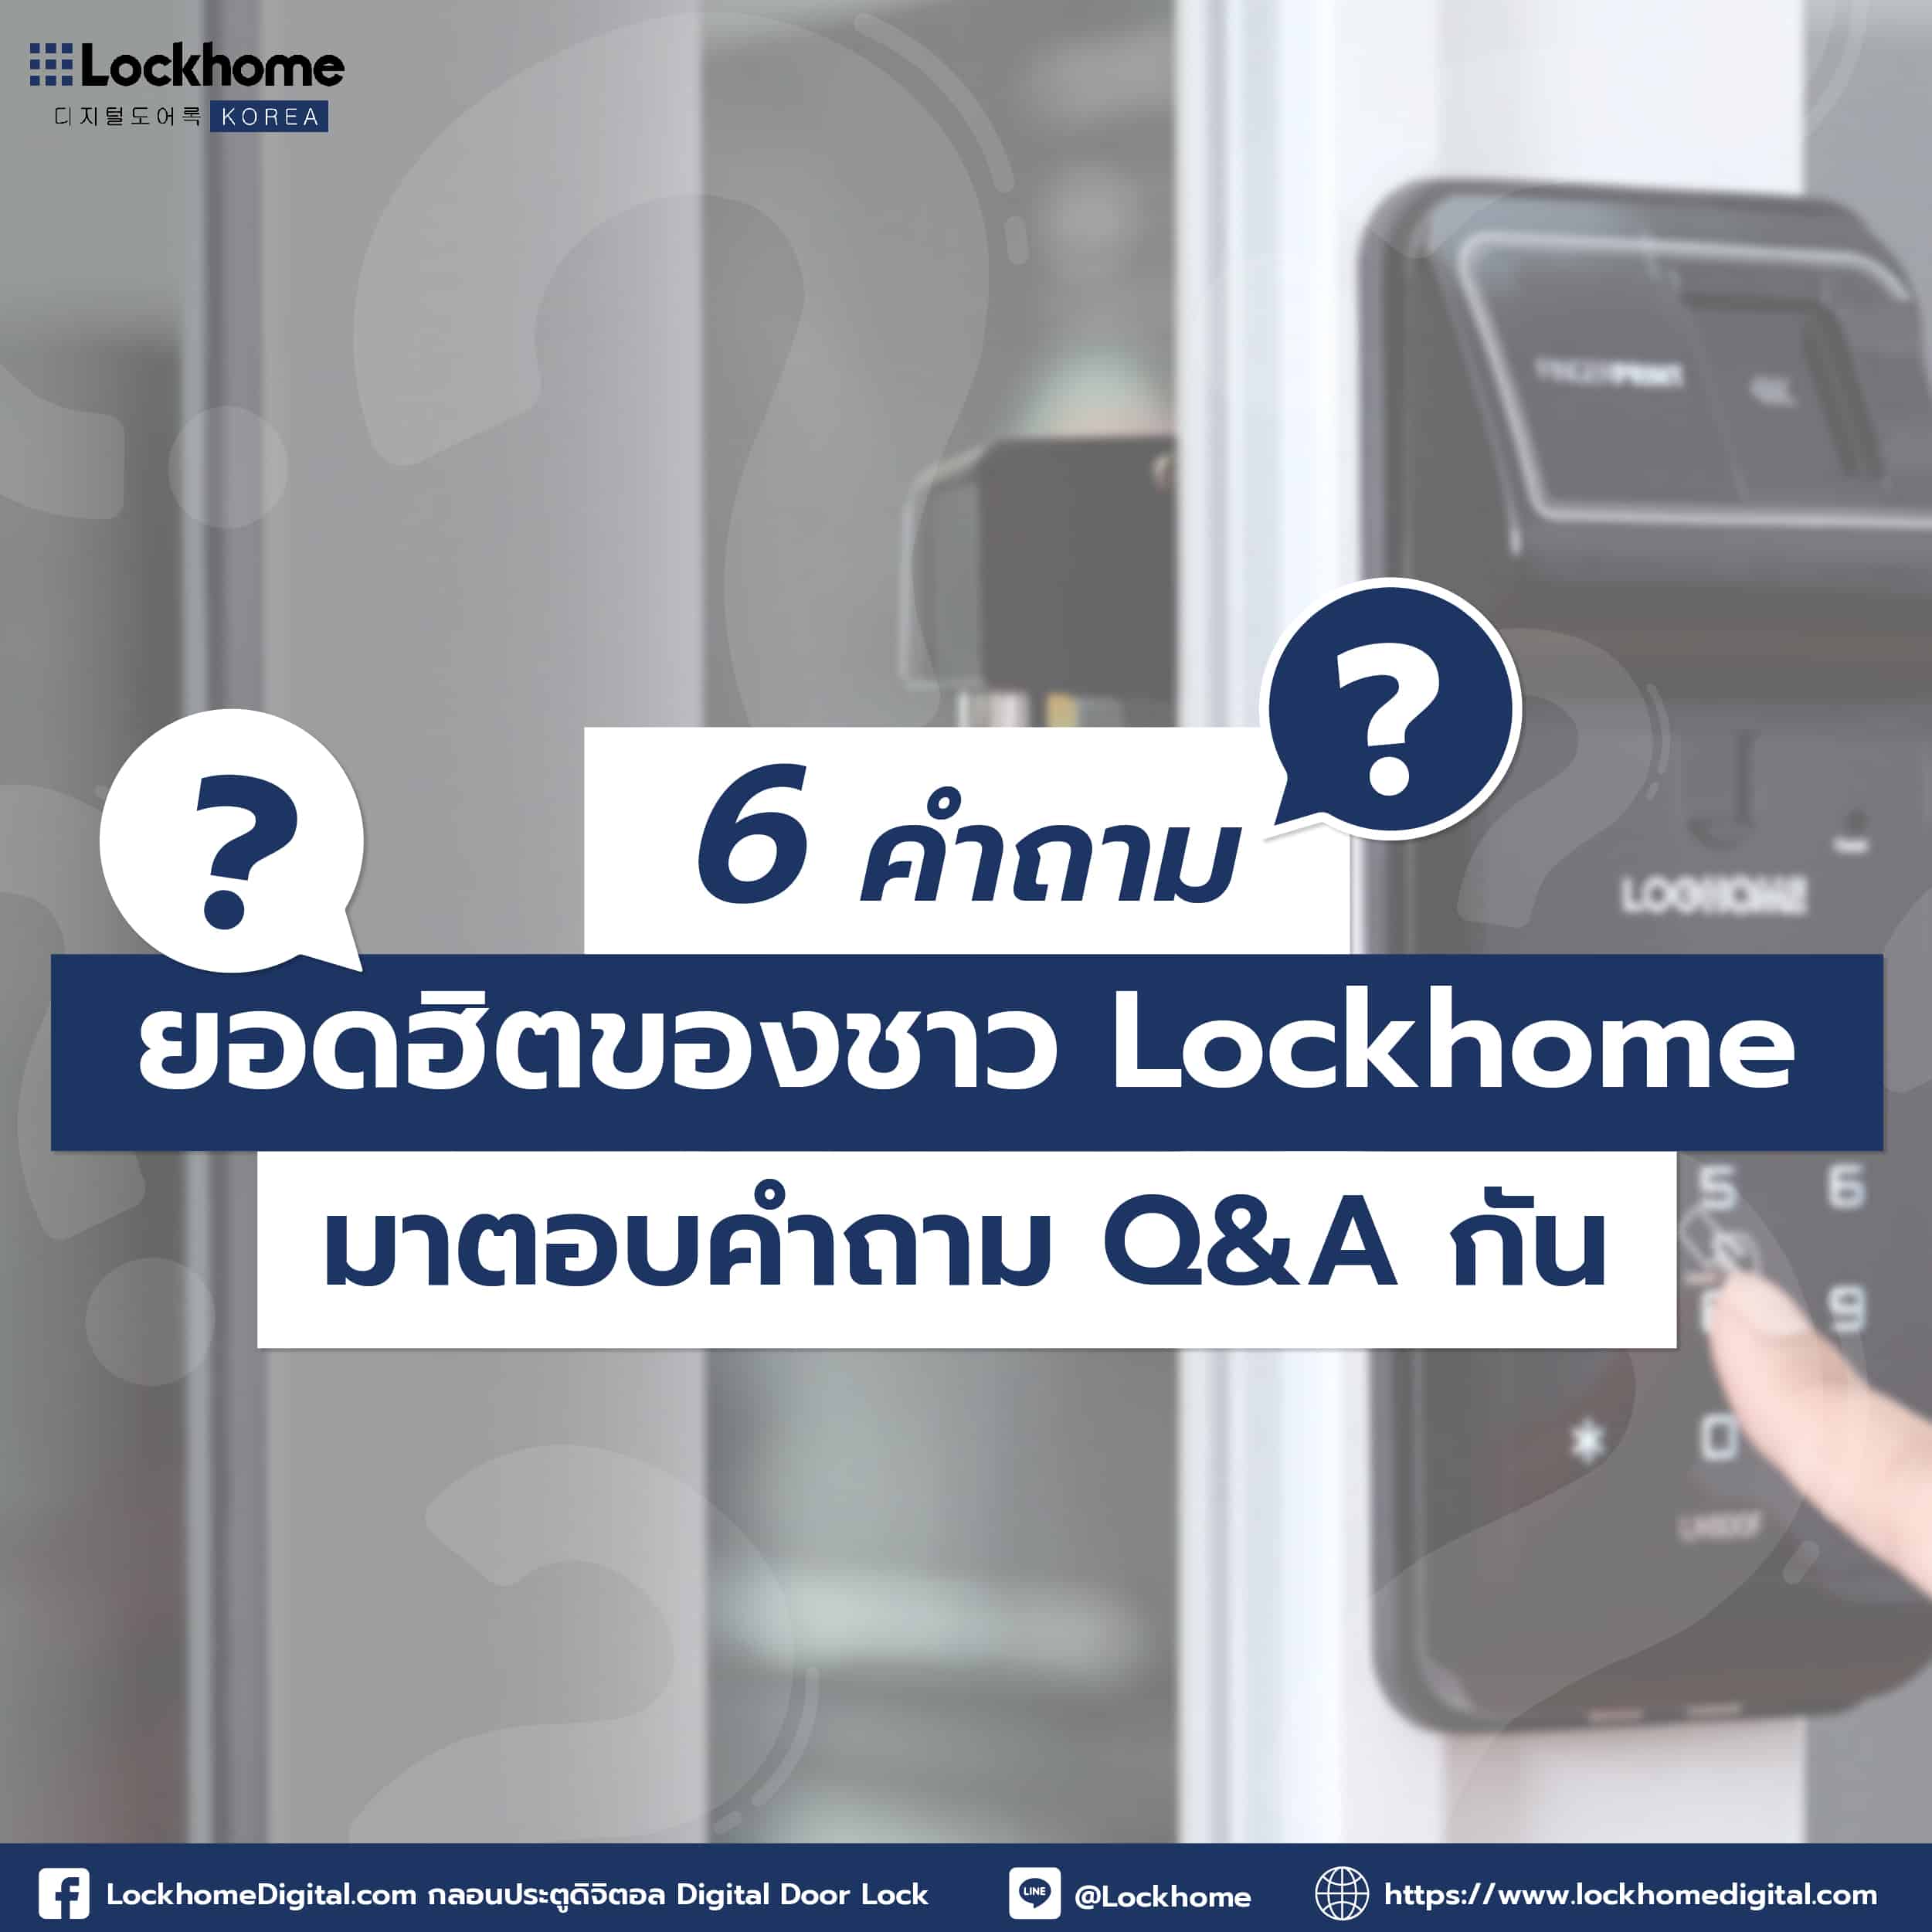 6 คำถามยอดฮิตของชาว Lockhome มาตอบคำถาม Q&A กัน